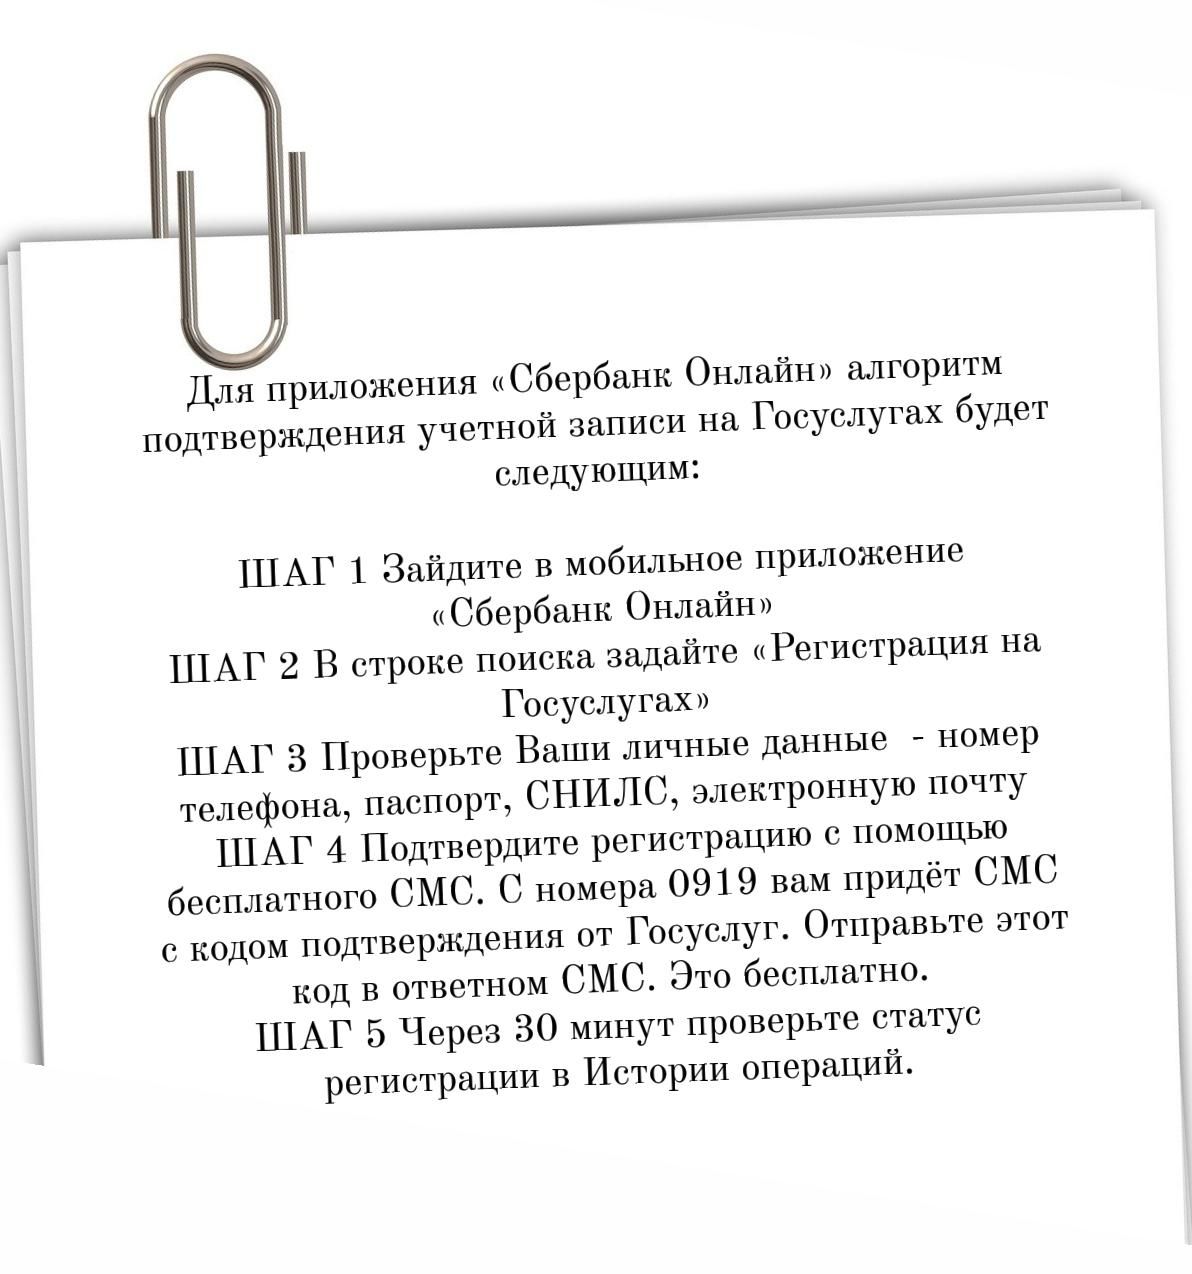 Жители Алексеевского района могут дистанционно подтвердить свою учетную запись в Госуслугах